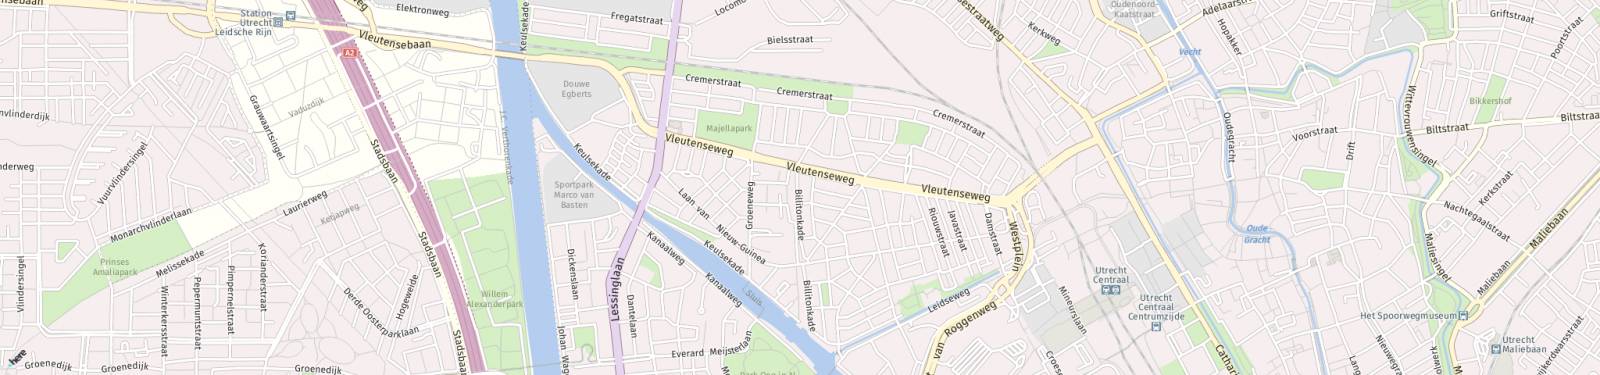 Kaart met locatie Appartement Billitonkade